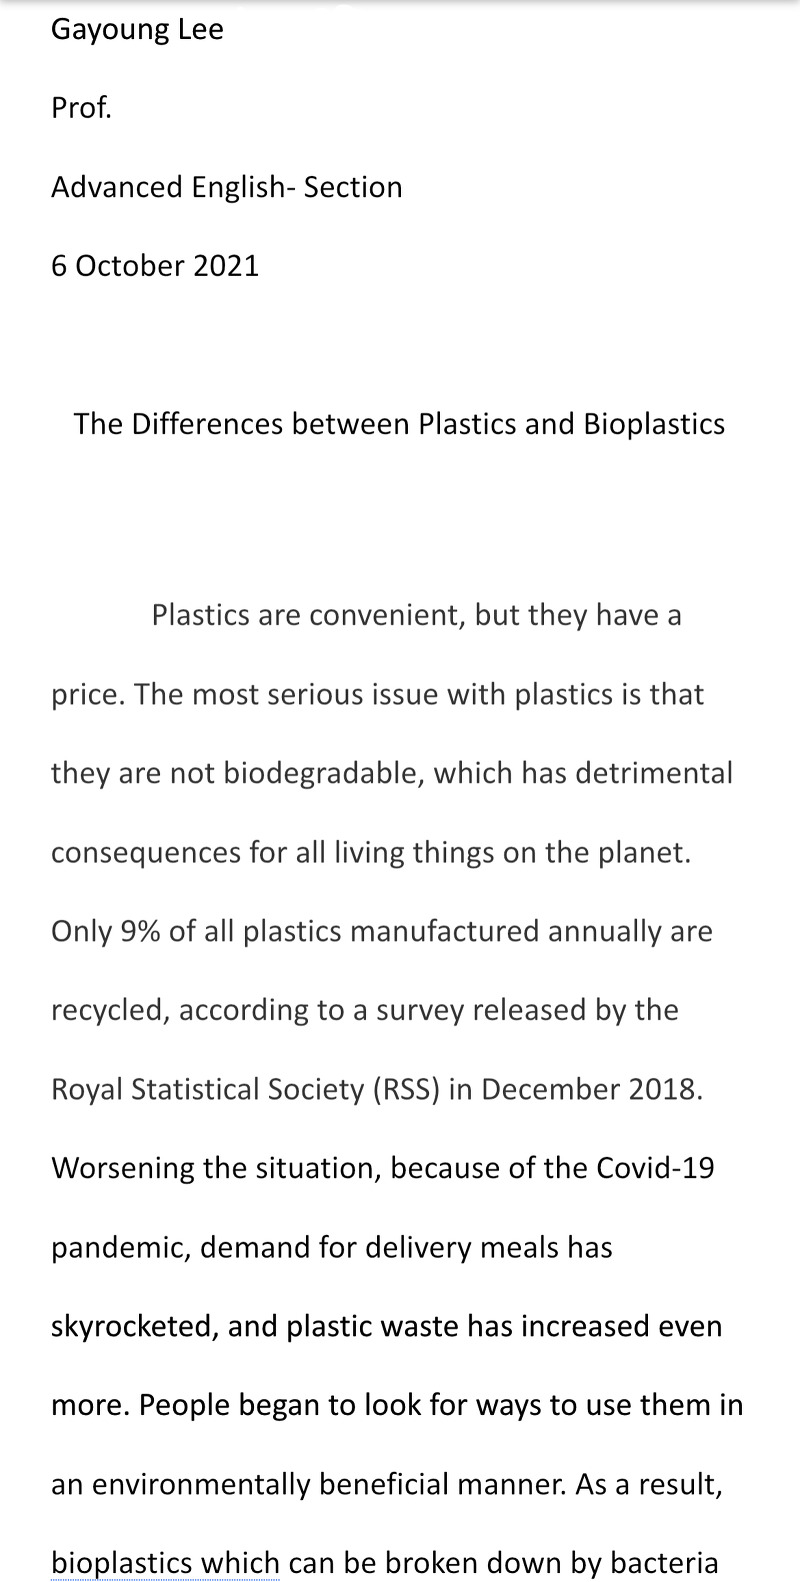 고급영어]만점받은 영어에세이 예시-아카데믹라이팅, Contrast Essay:The Differences Between Plastics  And